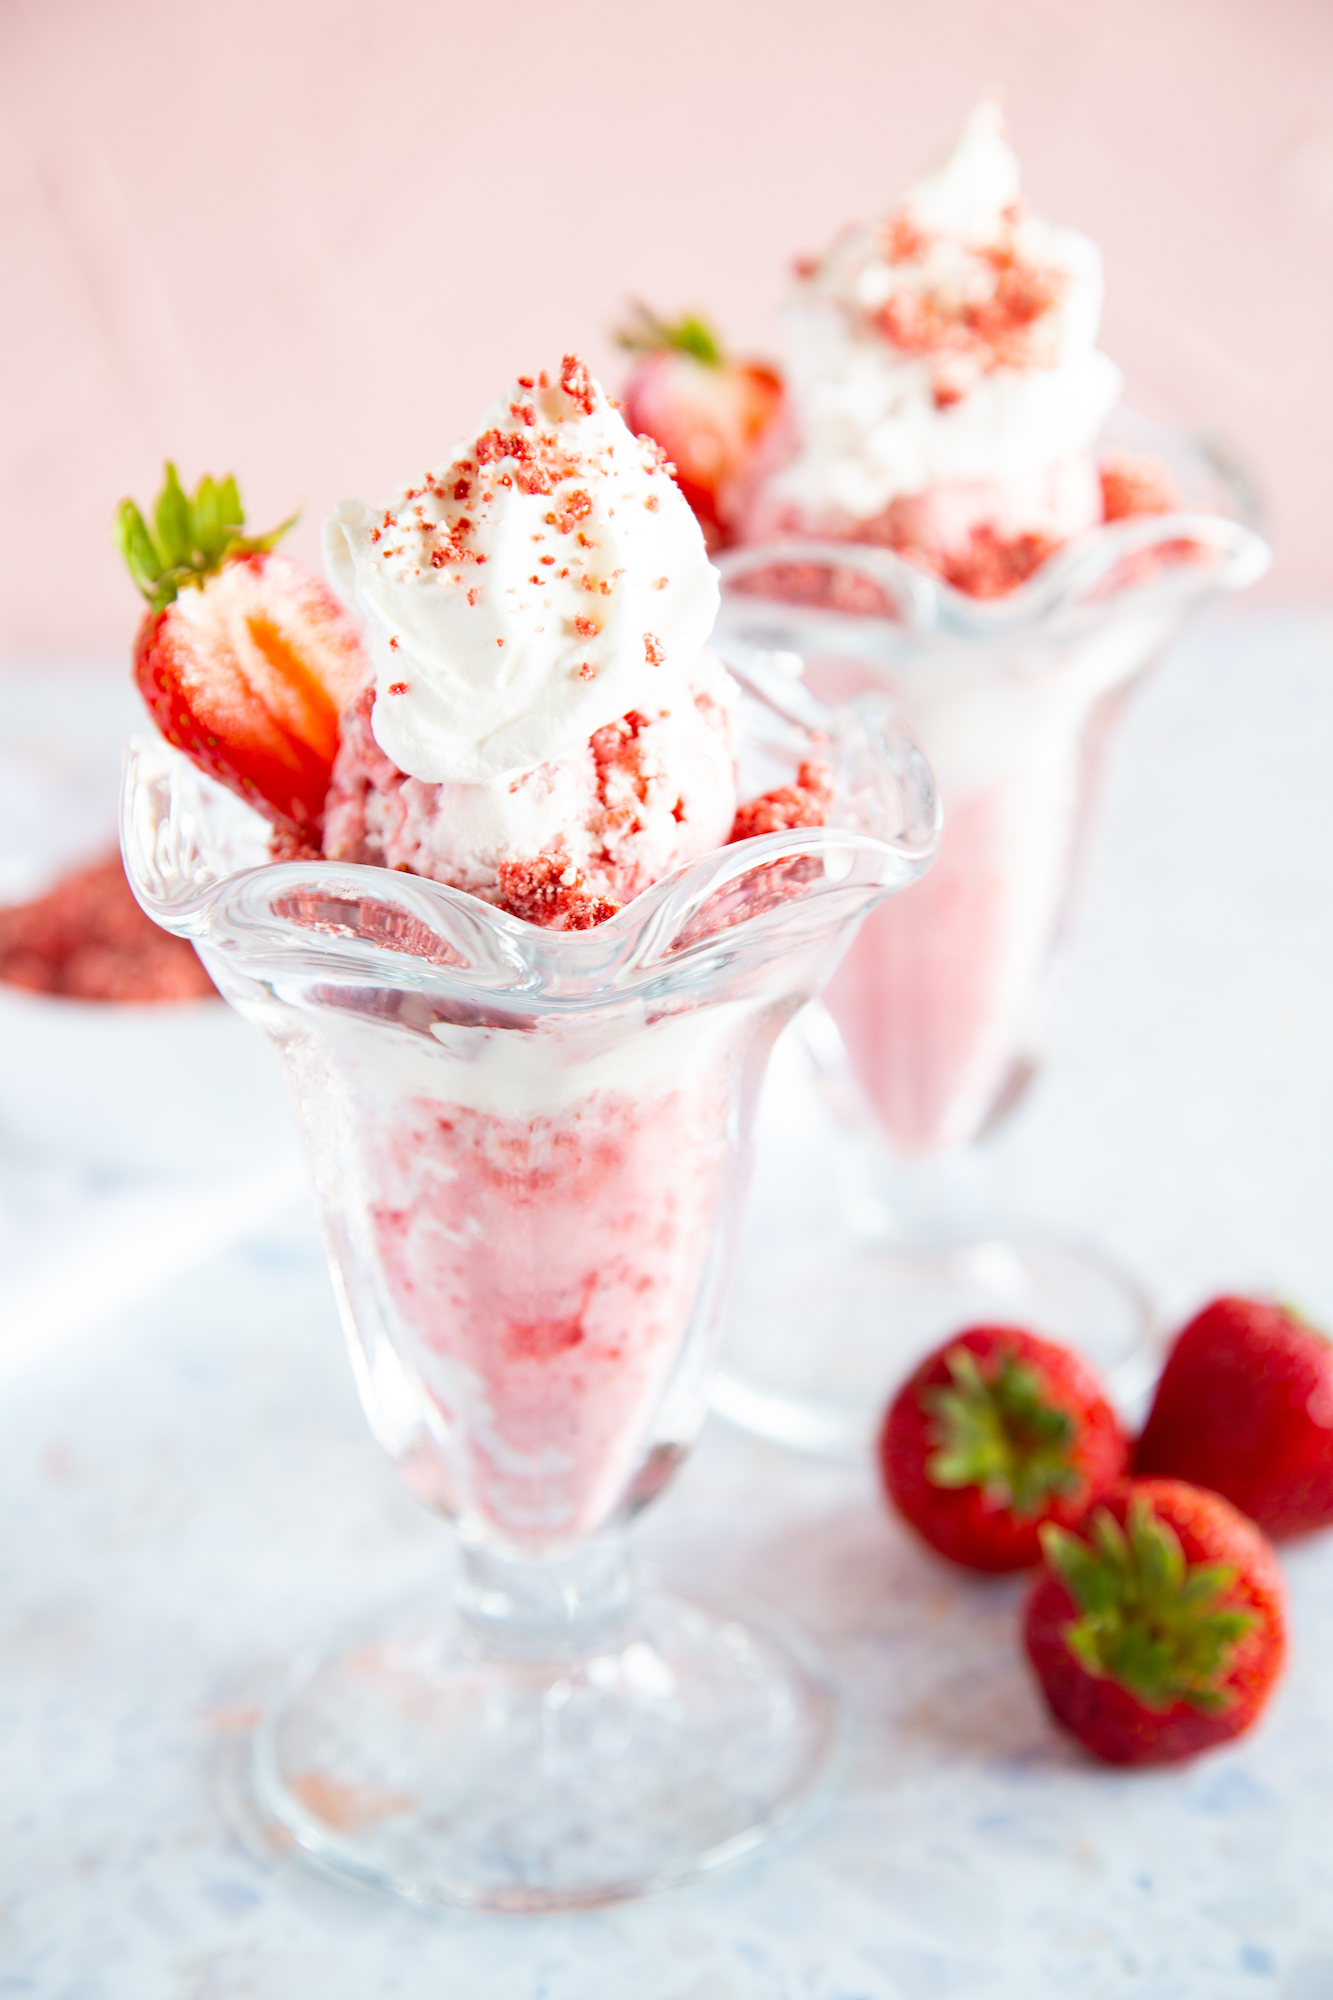 strawberry shortcake ice cream sundaes